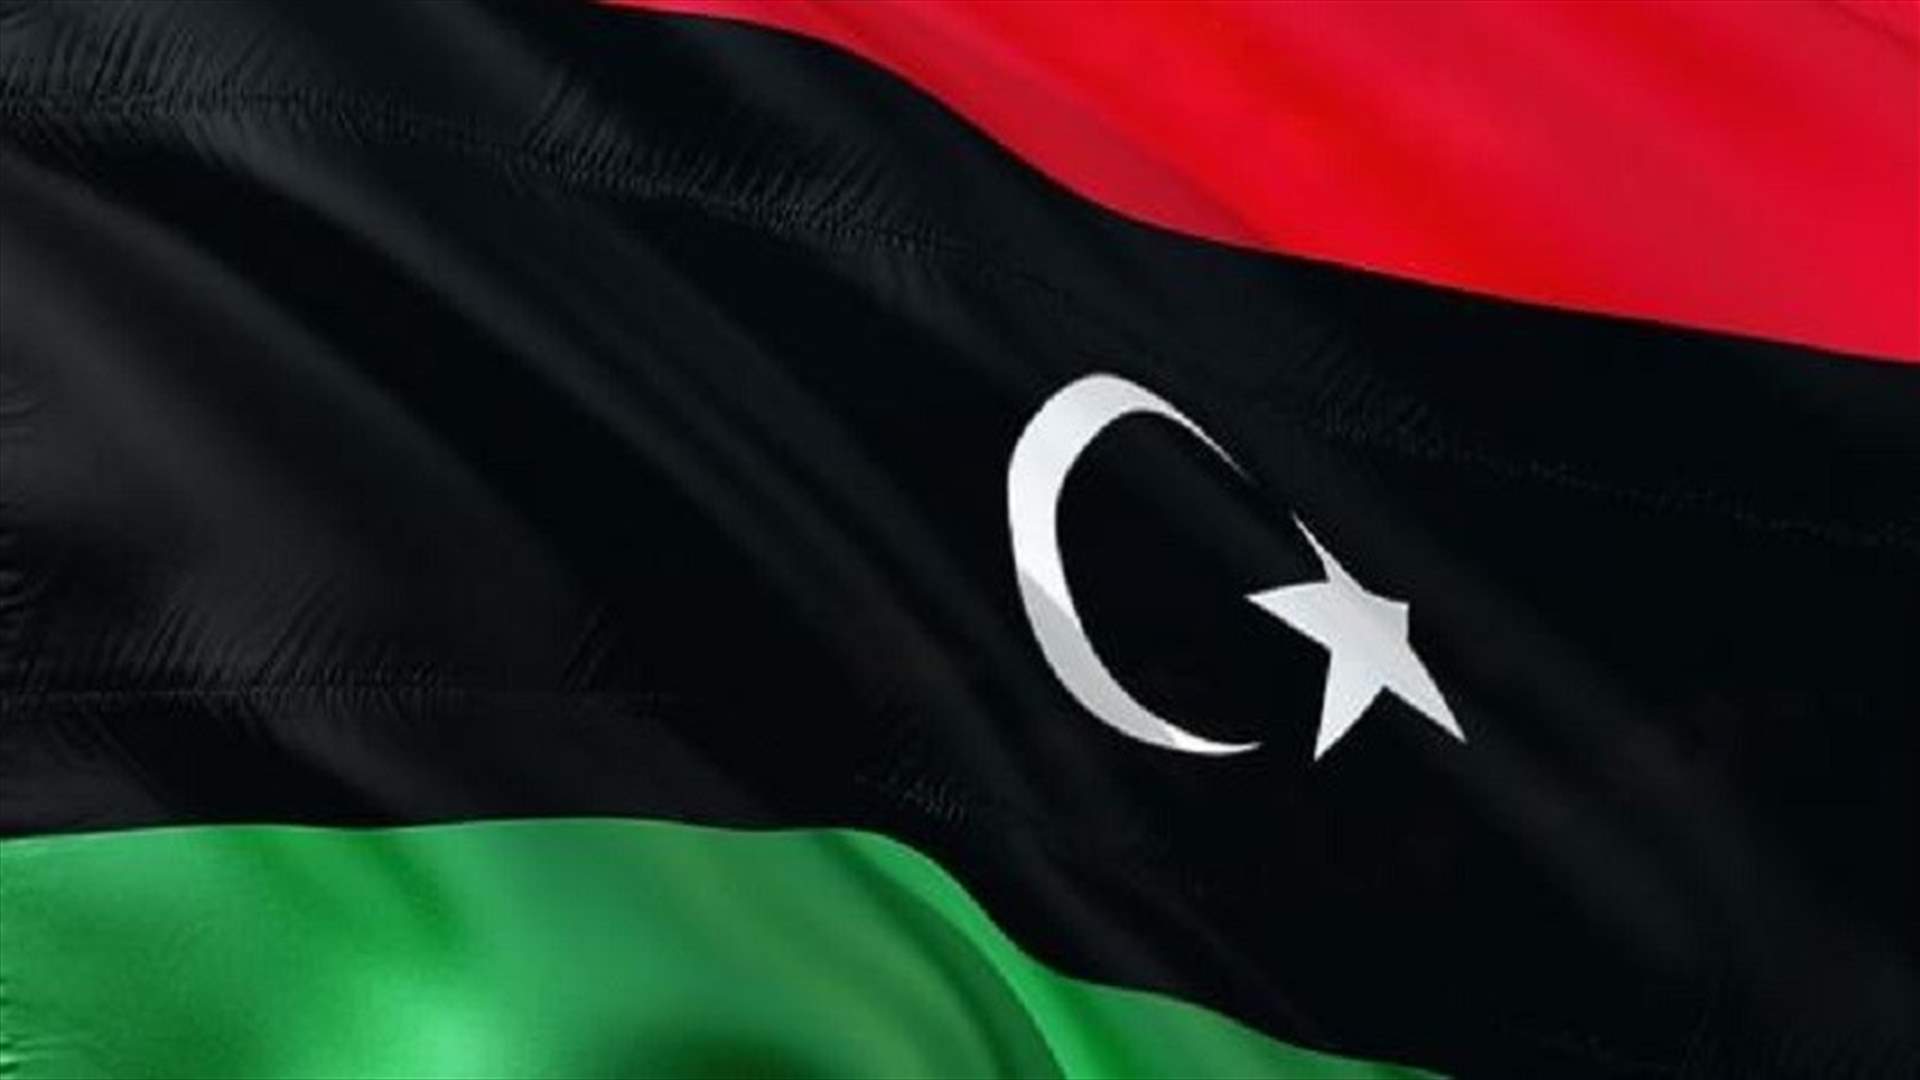 الأمم المتحدة تحدد موعدا لاختيار حكومة انتقالية في ليبيا